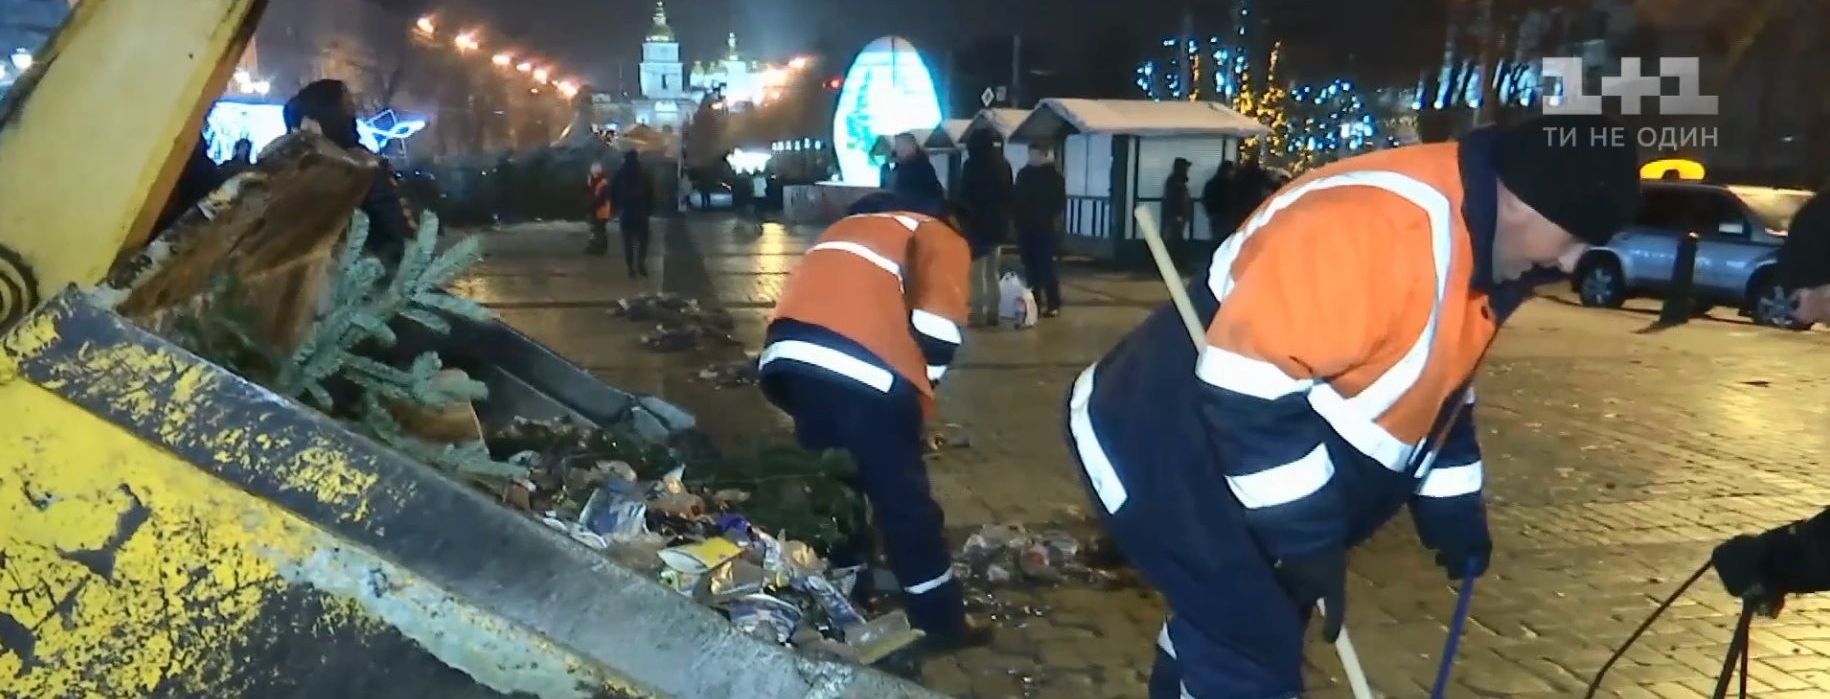 Після новорічної ночі з центру Києва вигребли більше 100 тонн сміття